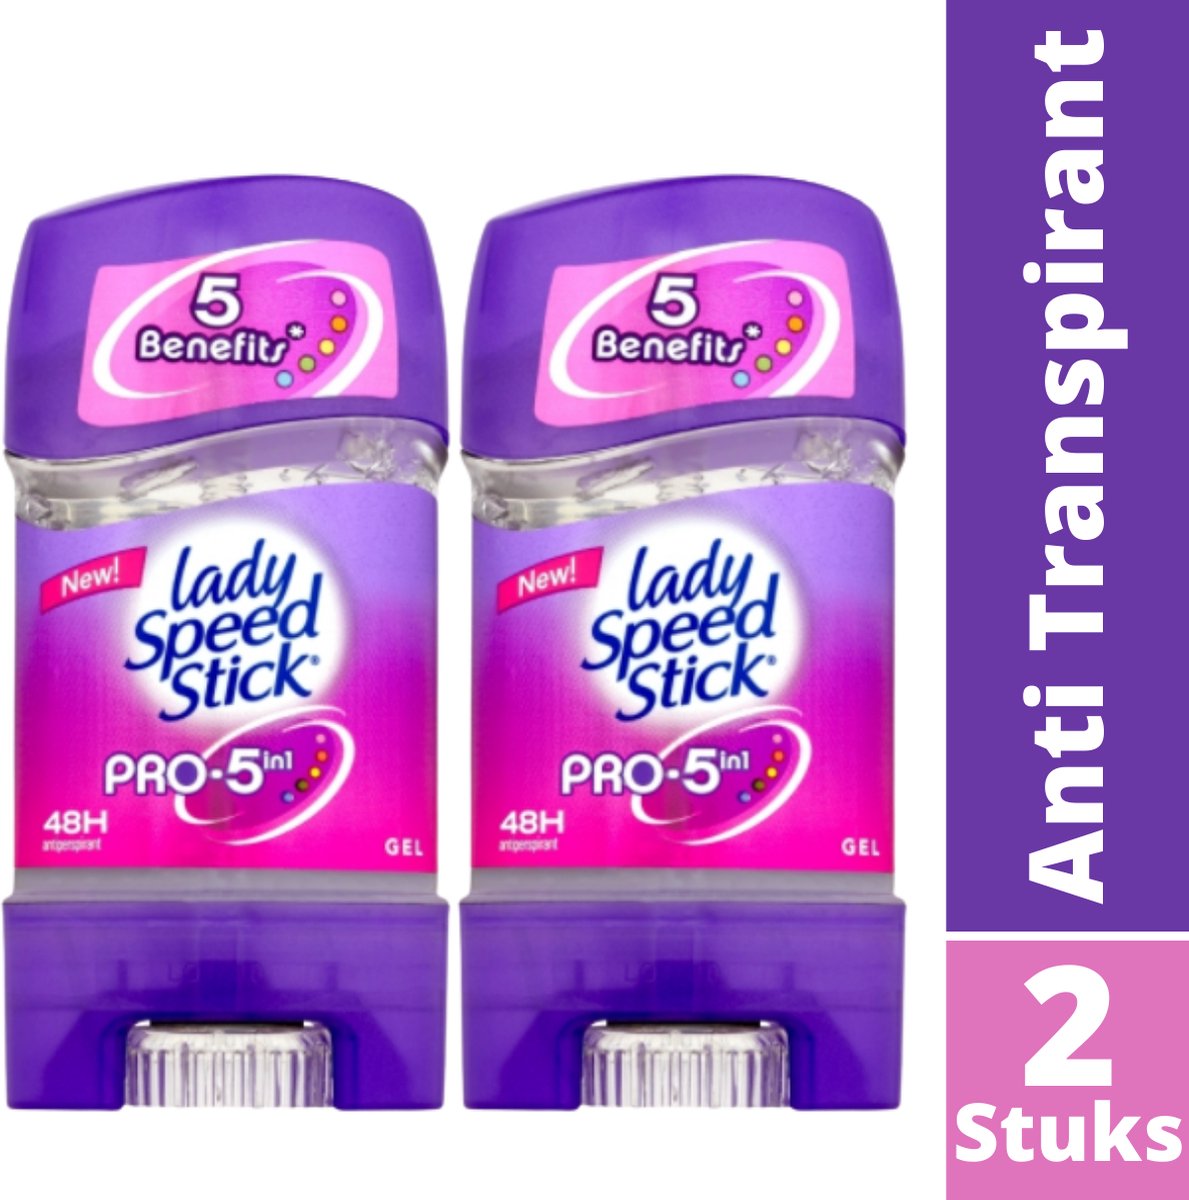 Lady Speed Stick Pro 5 in 1 Deodorant Vrouw Gel - 48h Effectieve Vijfvoudige Bescherming Deodorants - Anti Transpirant - Ruik Onweerstaanbaar en Voel je Top - Deodorant Vrouw Voordeelverpakking - 2 Stuks